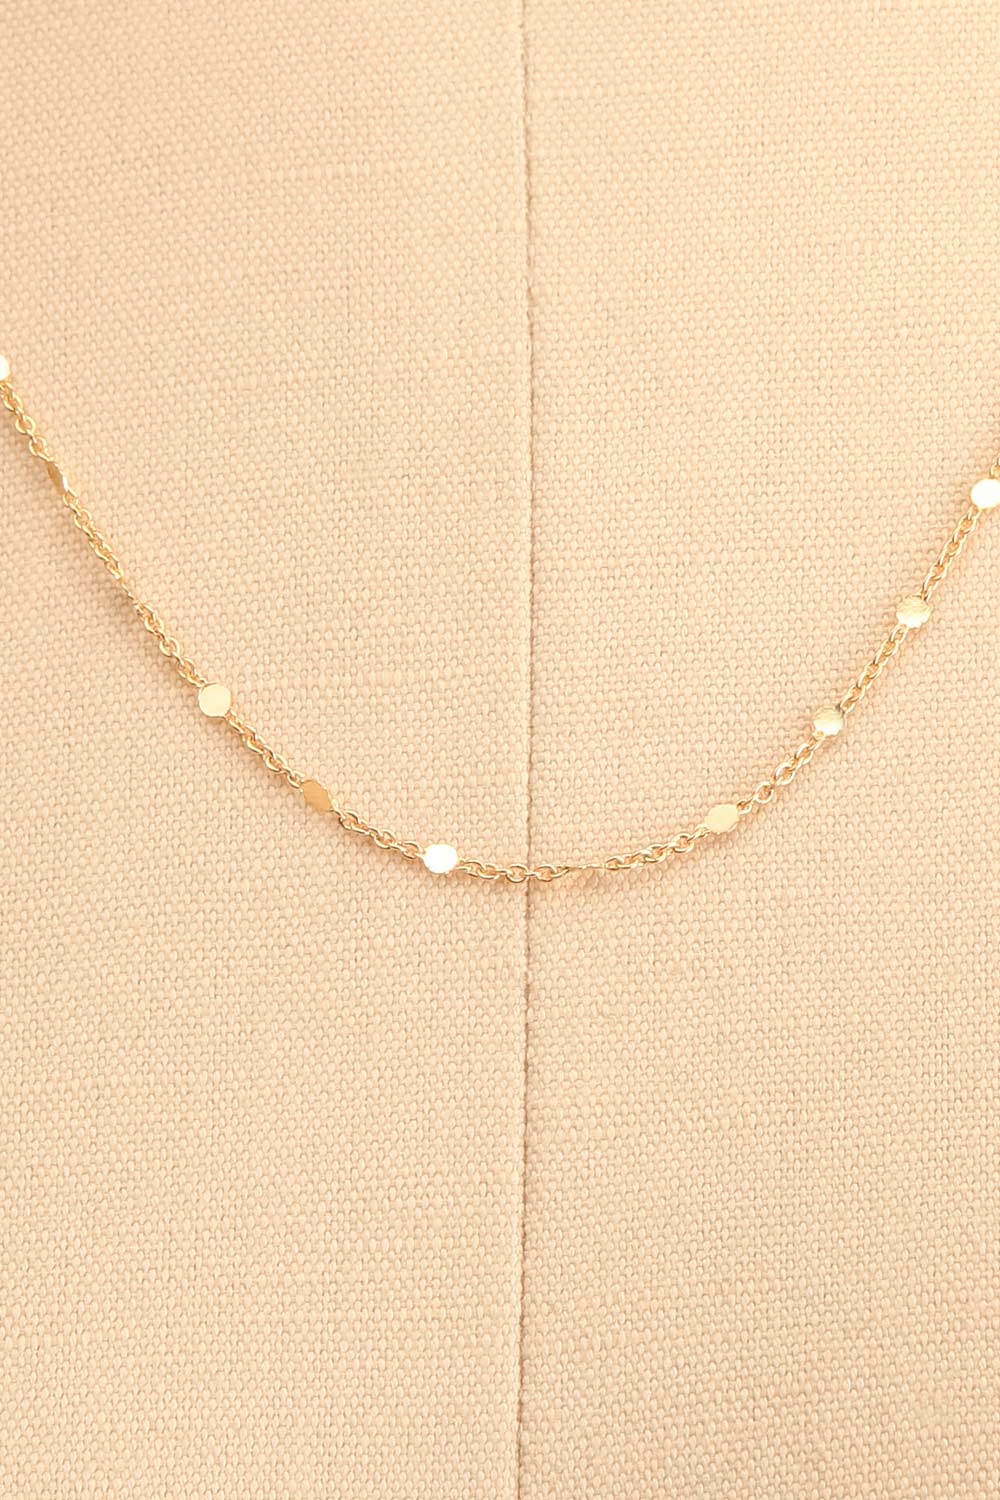 Elizabeth Blackwell Set of 2 Gold Necklaces | La petite garçonne chain close-up